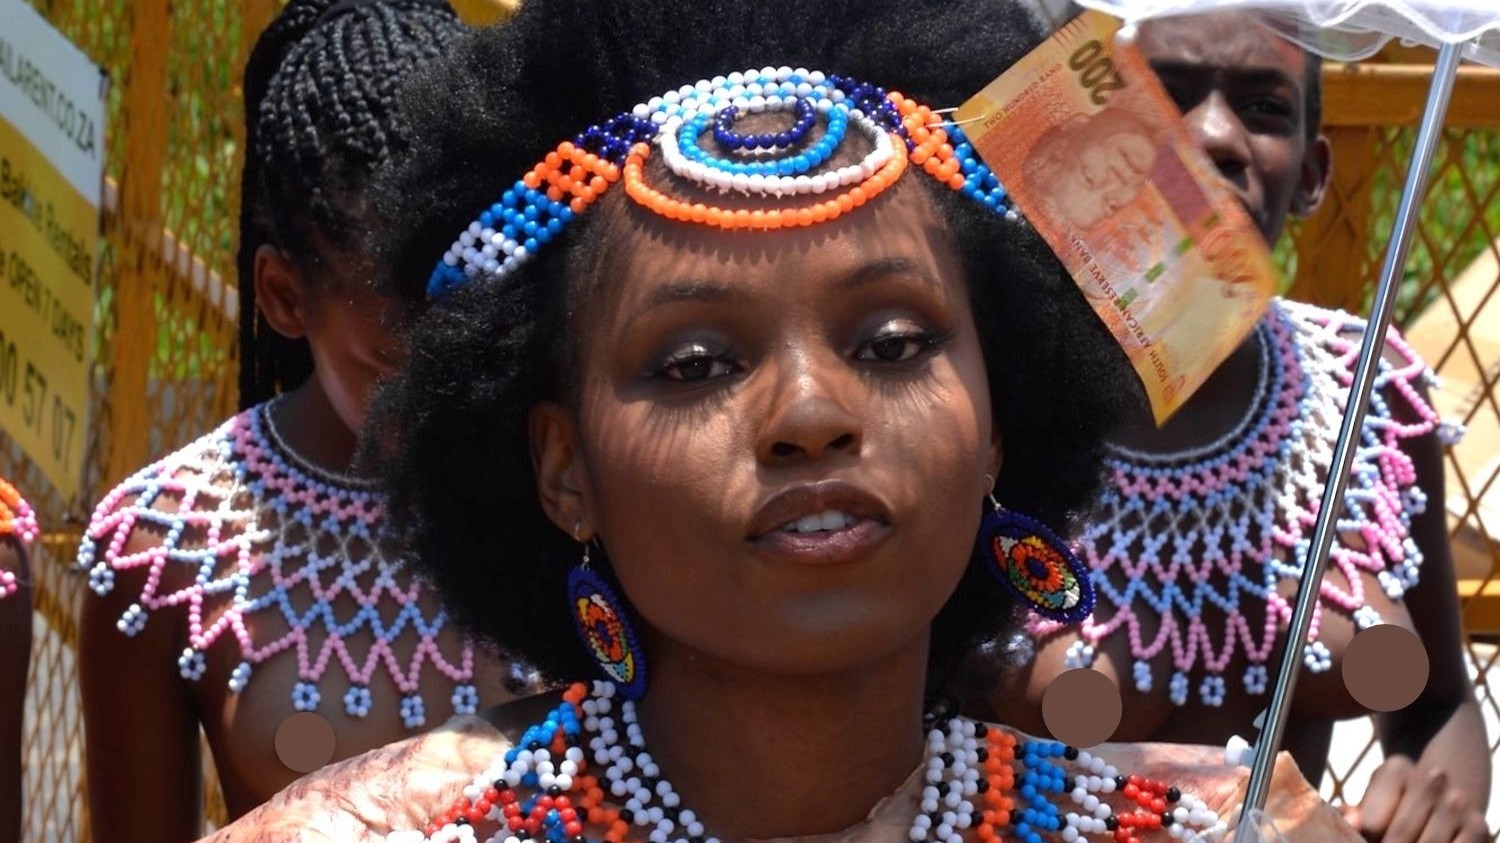 daham perera share african tribe tits photos